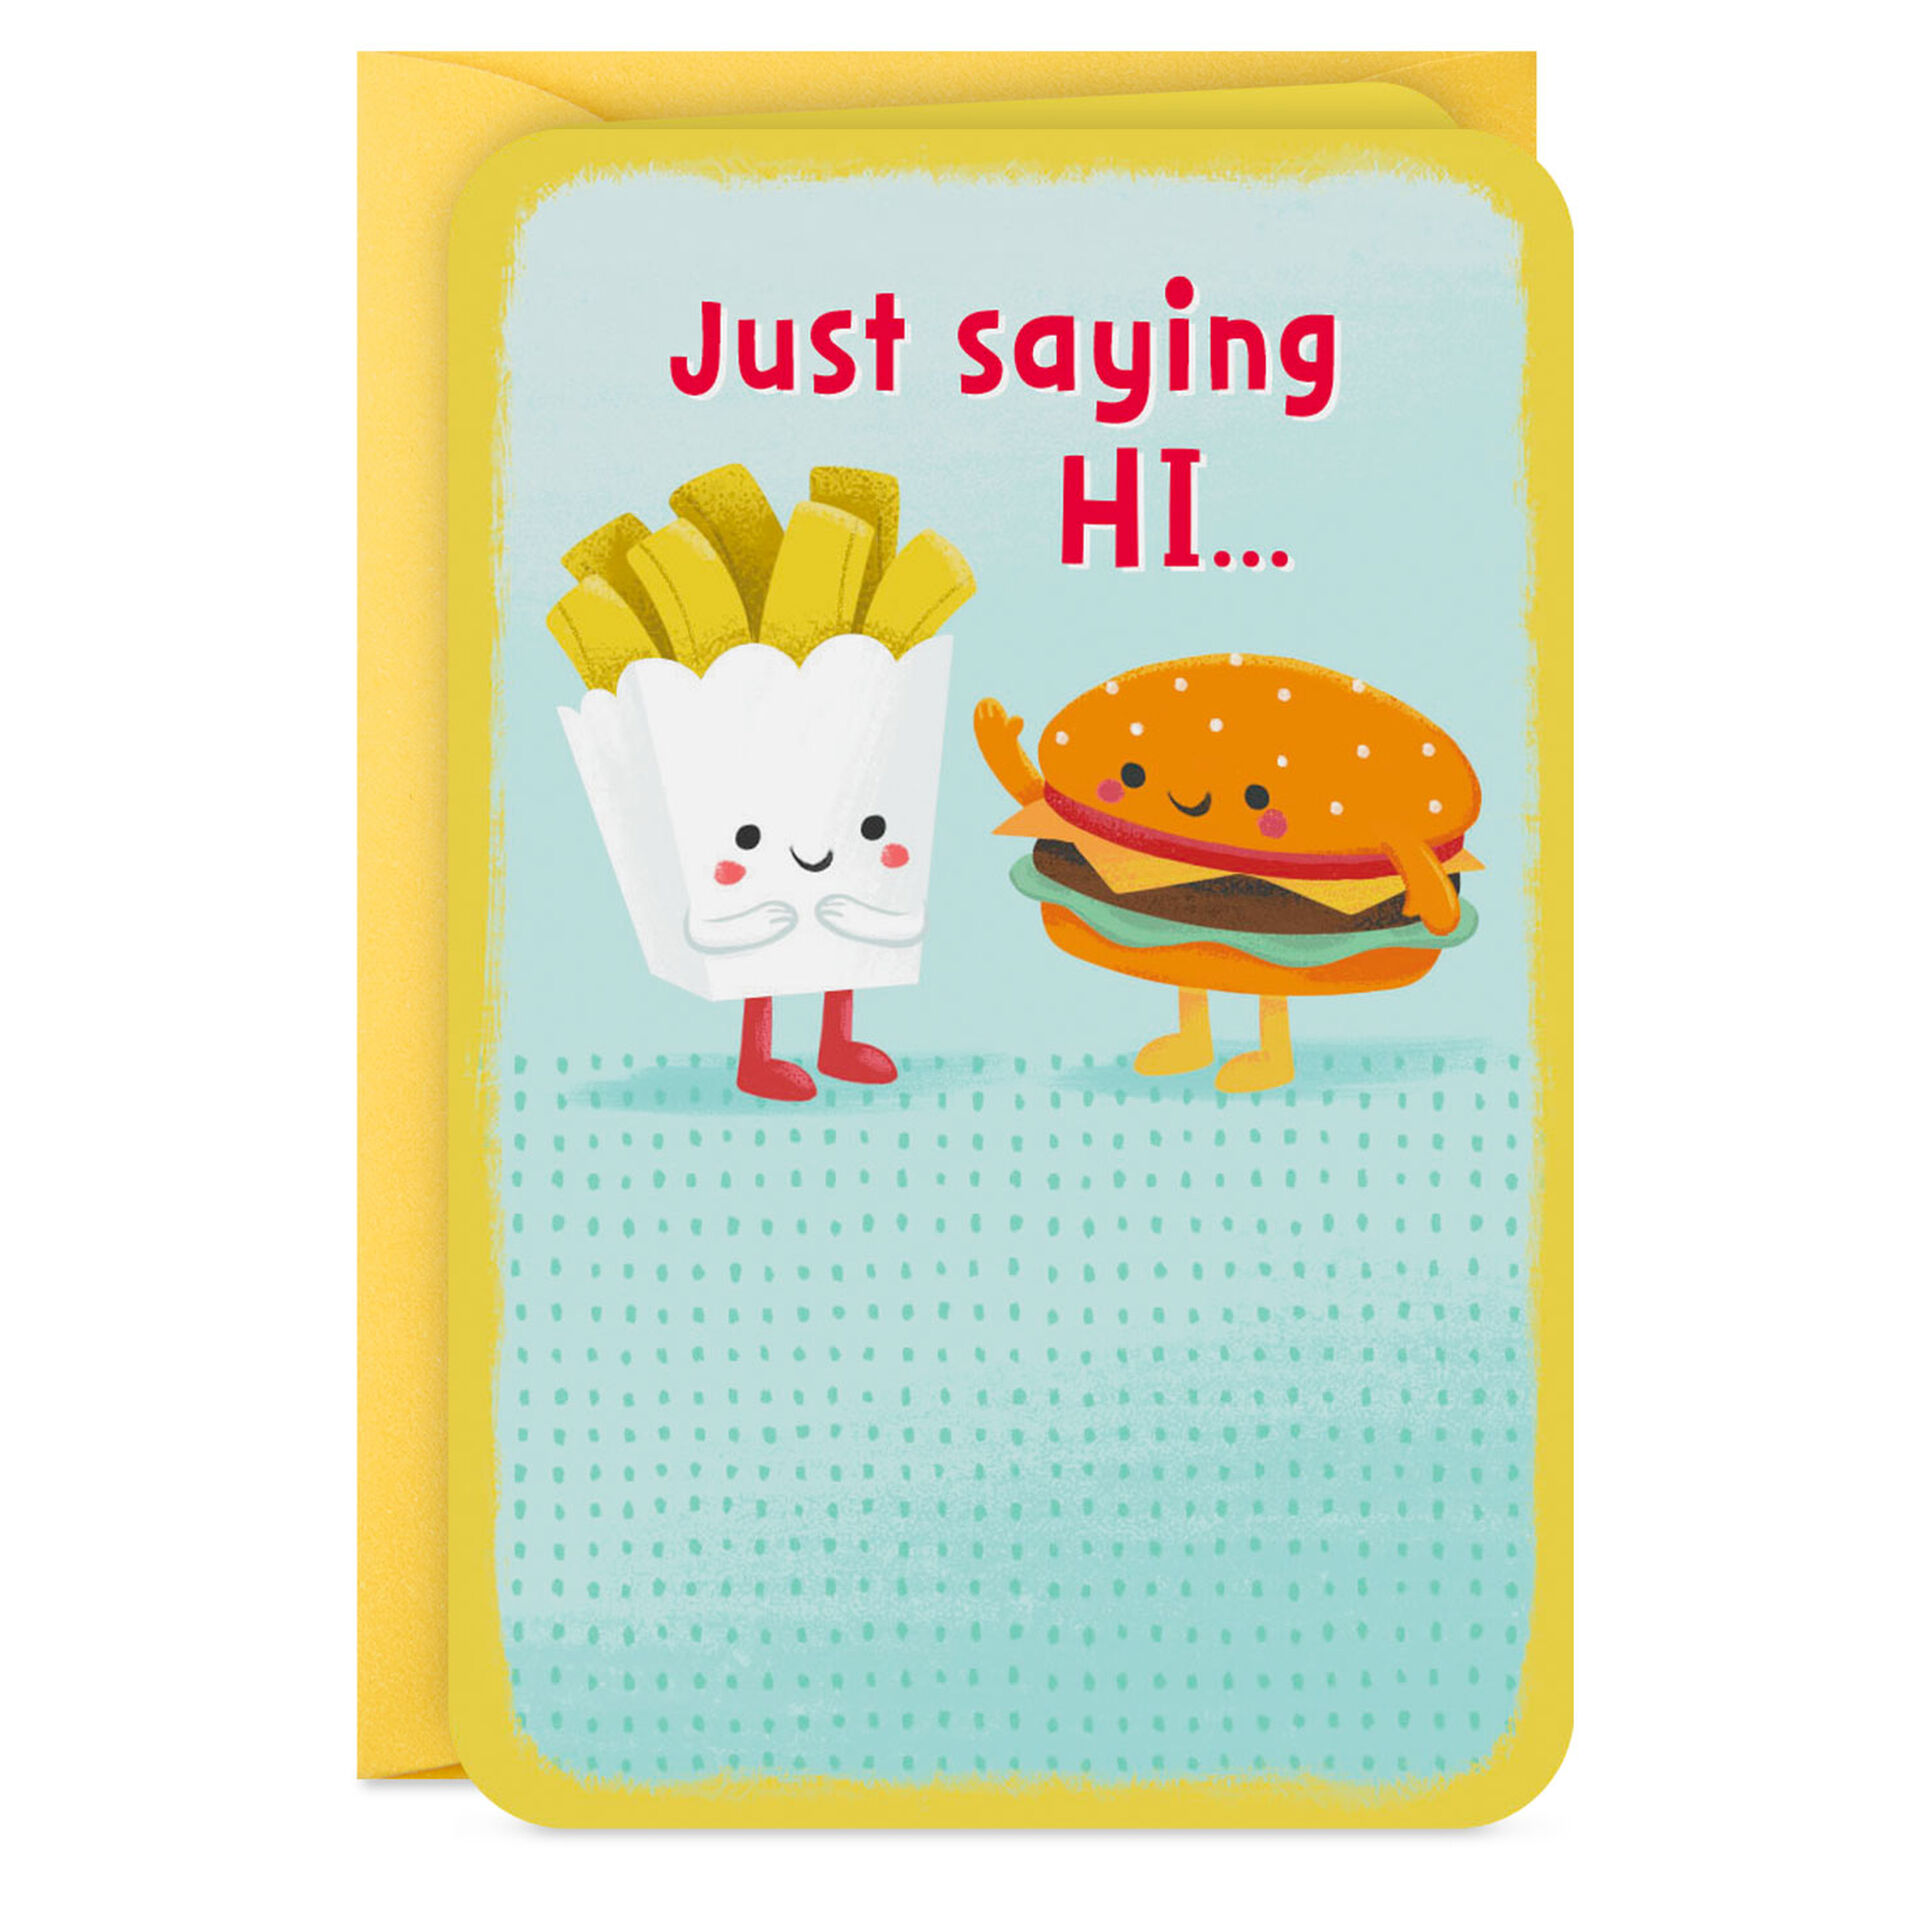 Cute-Hamburger-and-Fries-Mini-Card-for-Kids_199LJB1321_03